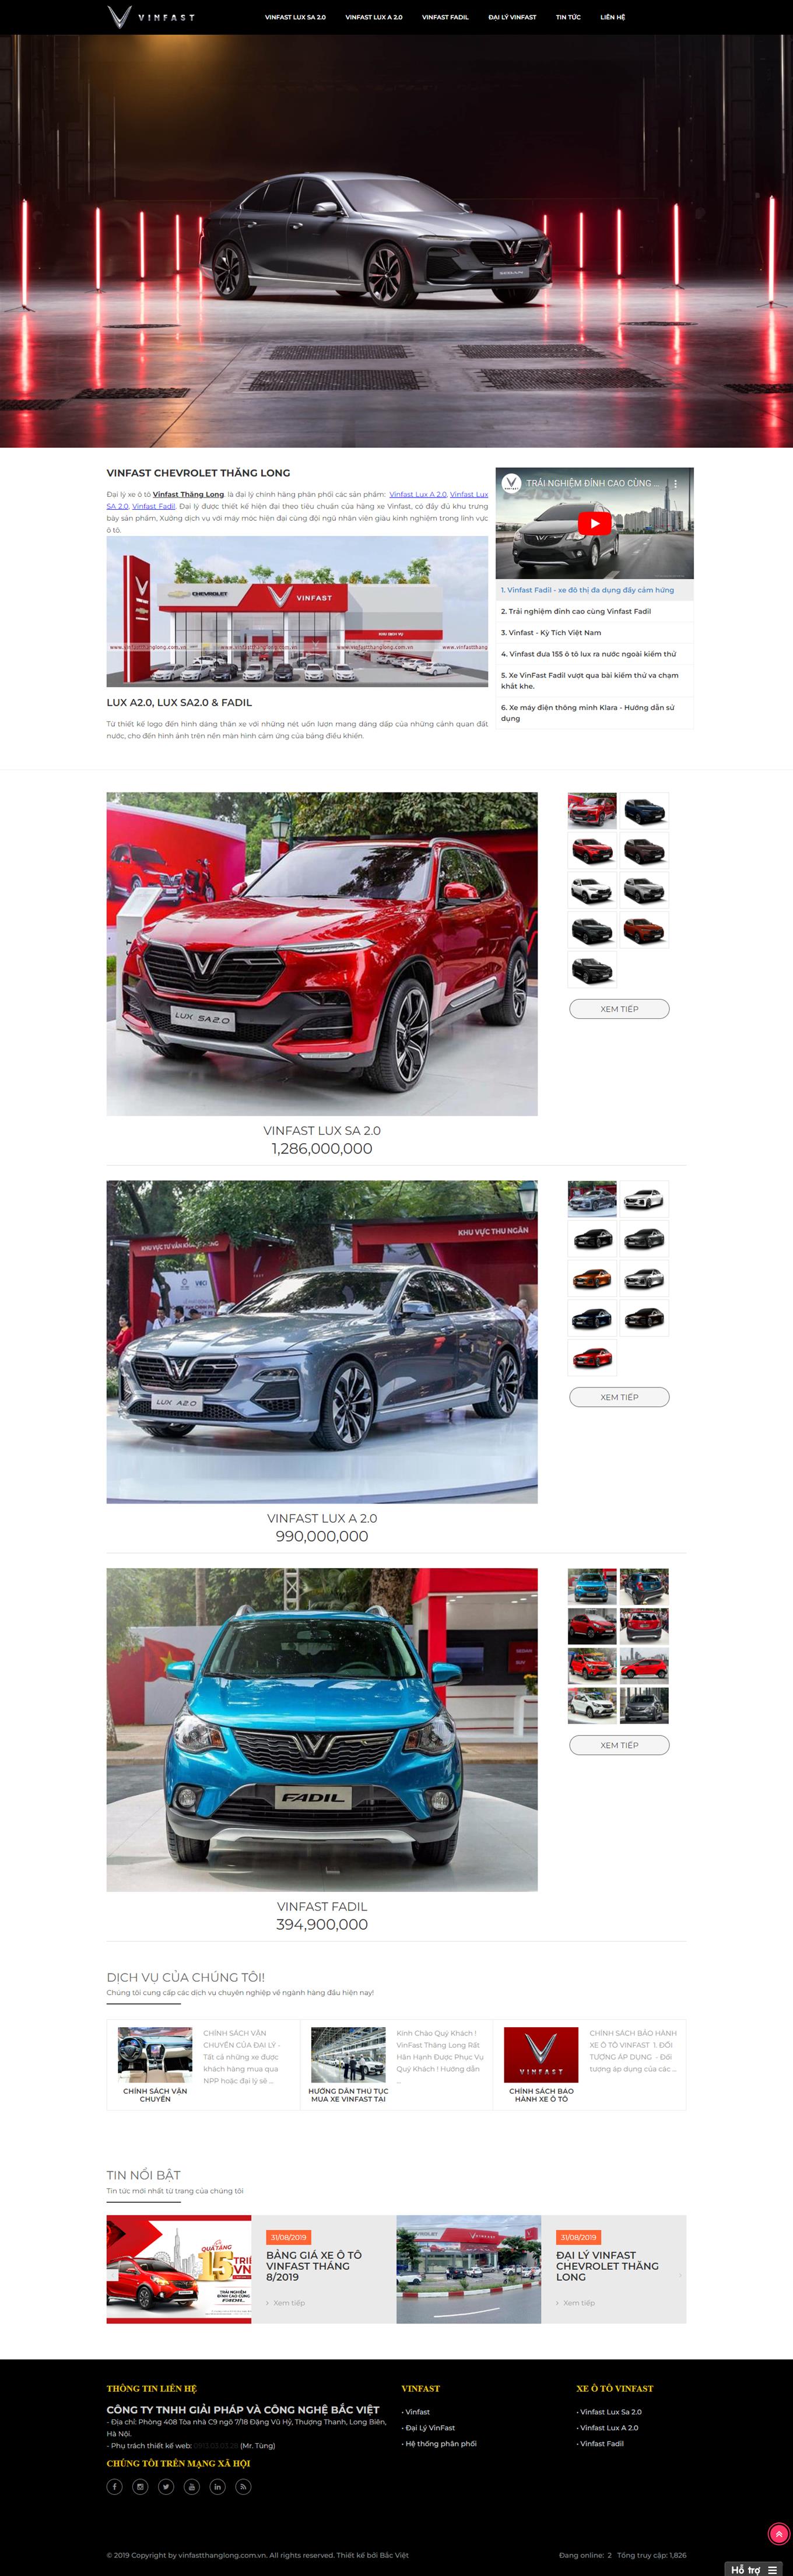 Mẫu web giới thiệu và bán xe hơi Vinfast